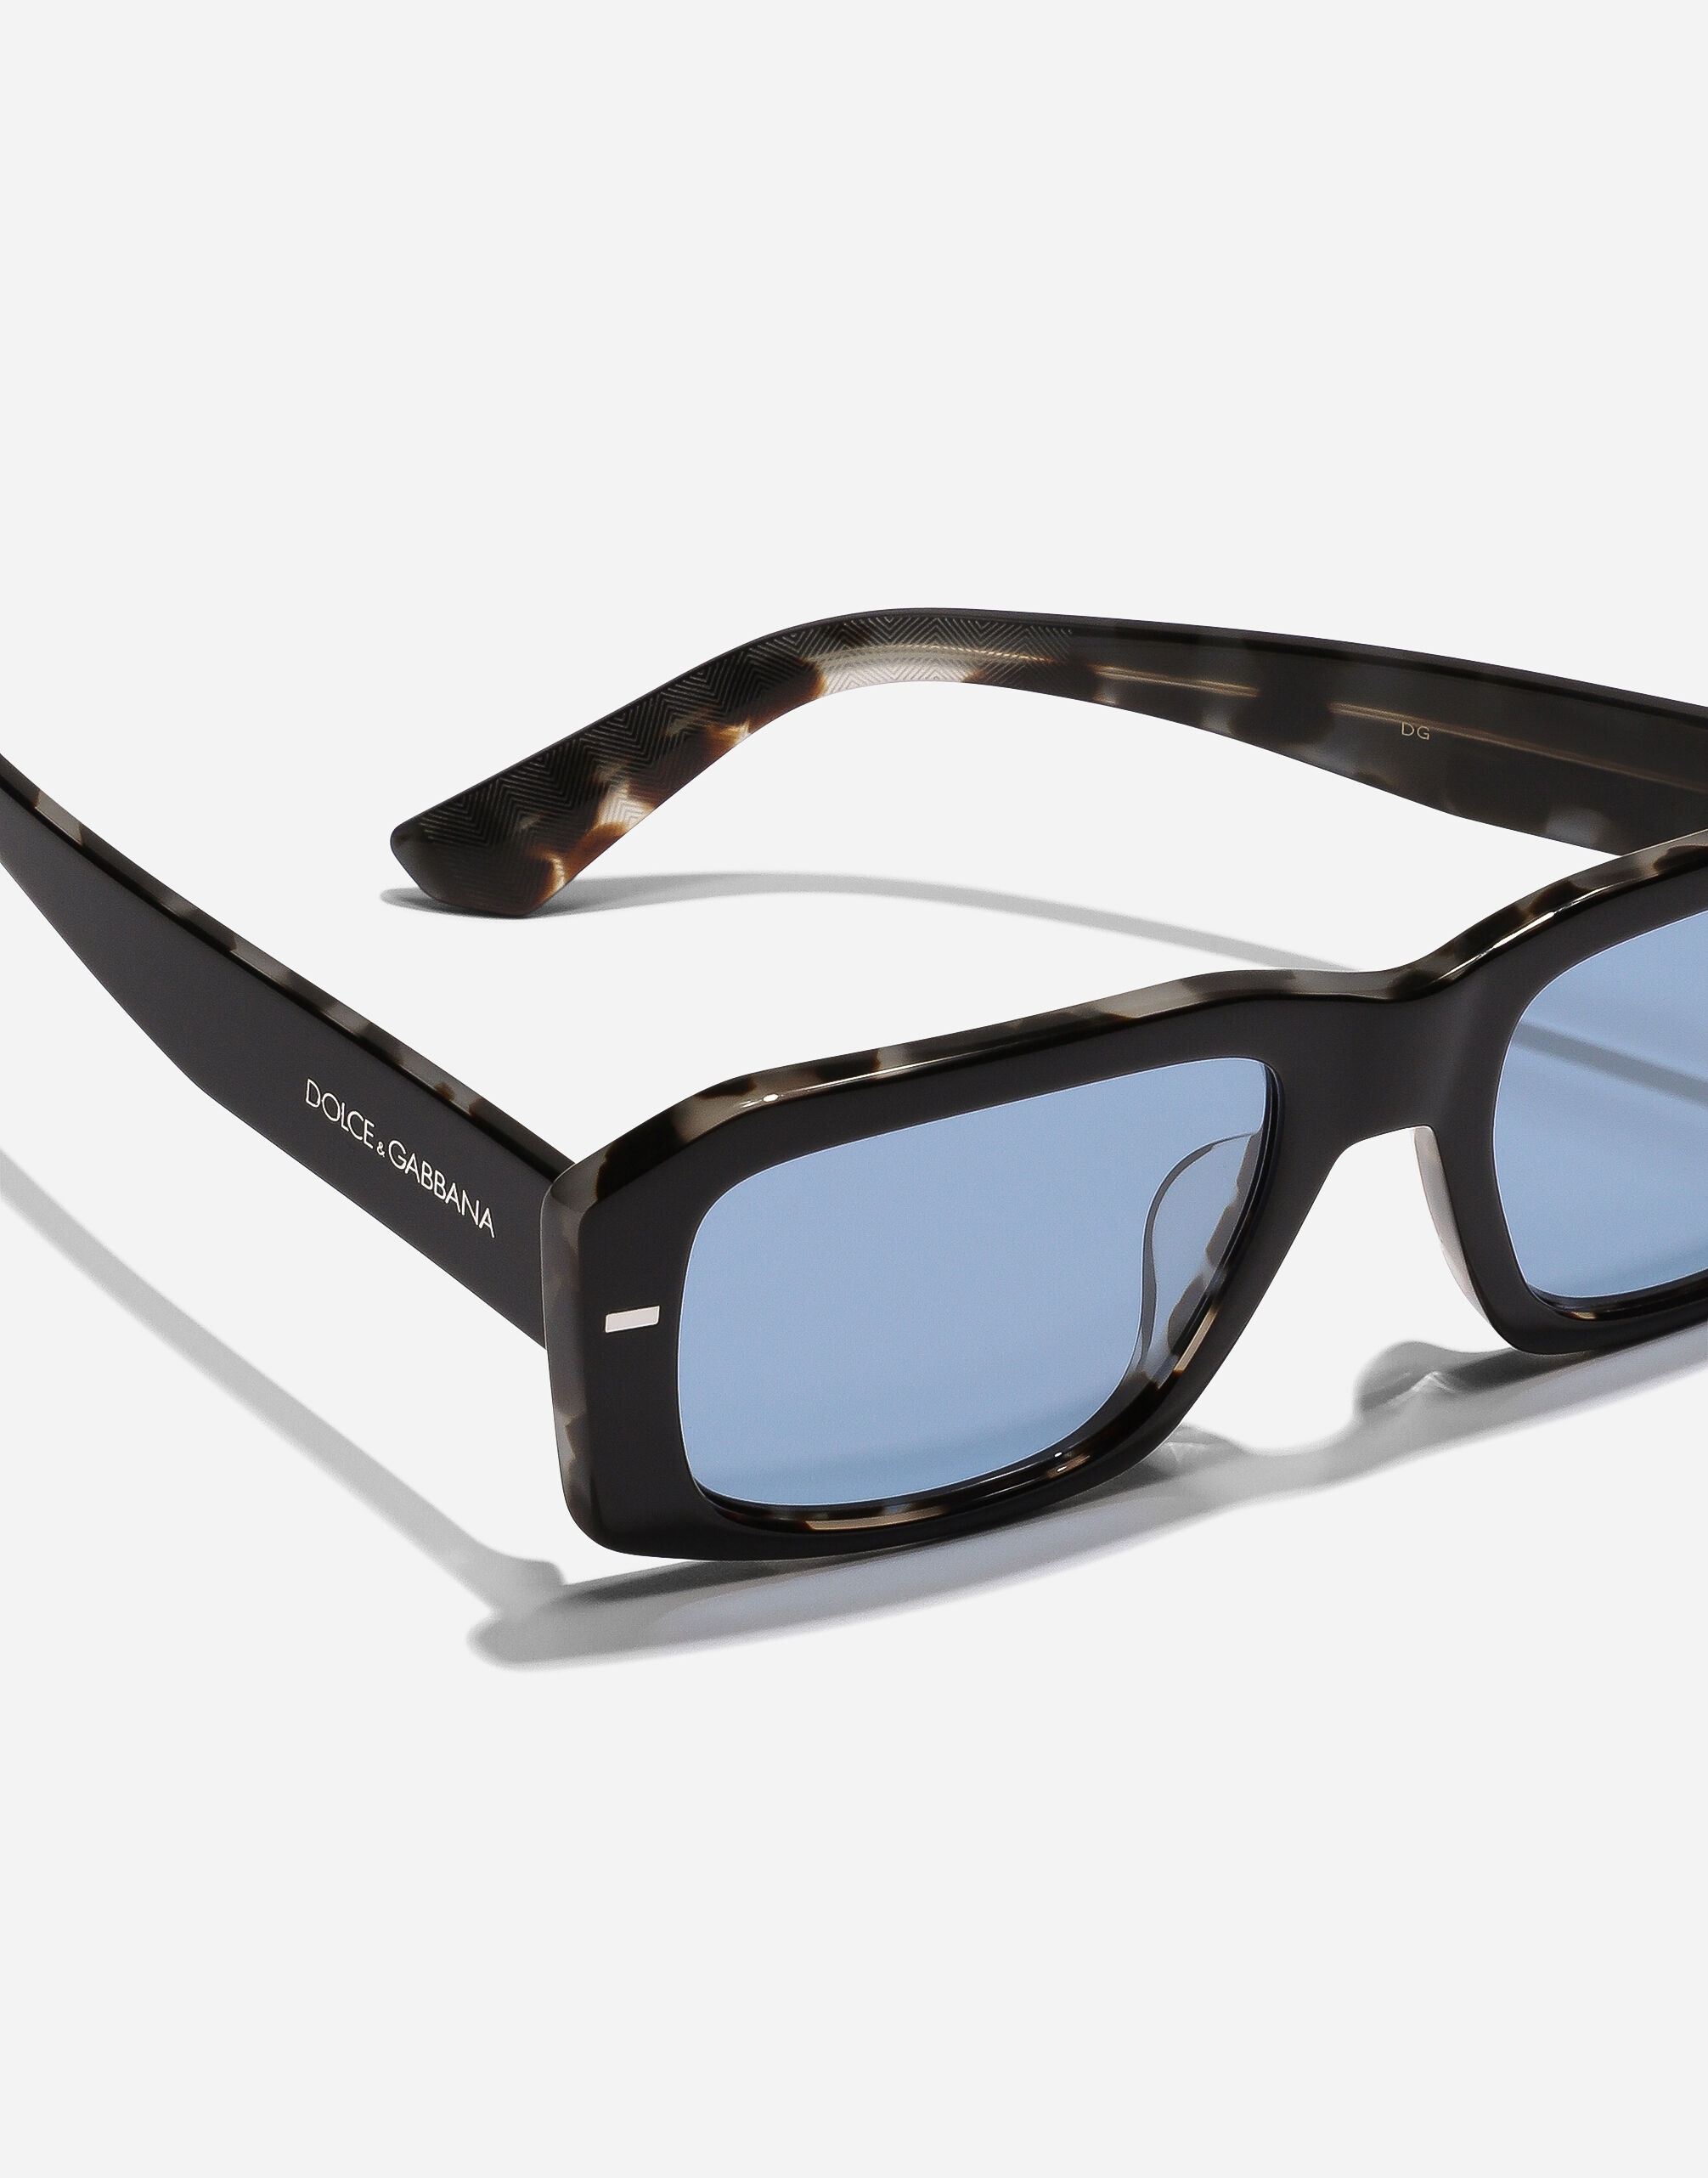 Lusso Sartoriale Sunglasses - 5